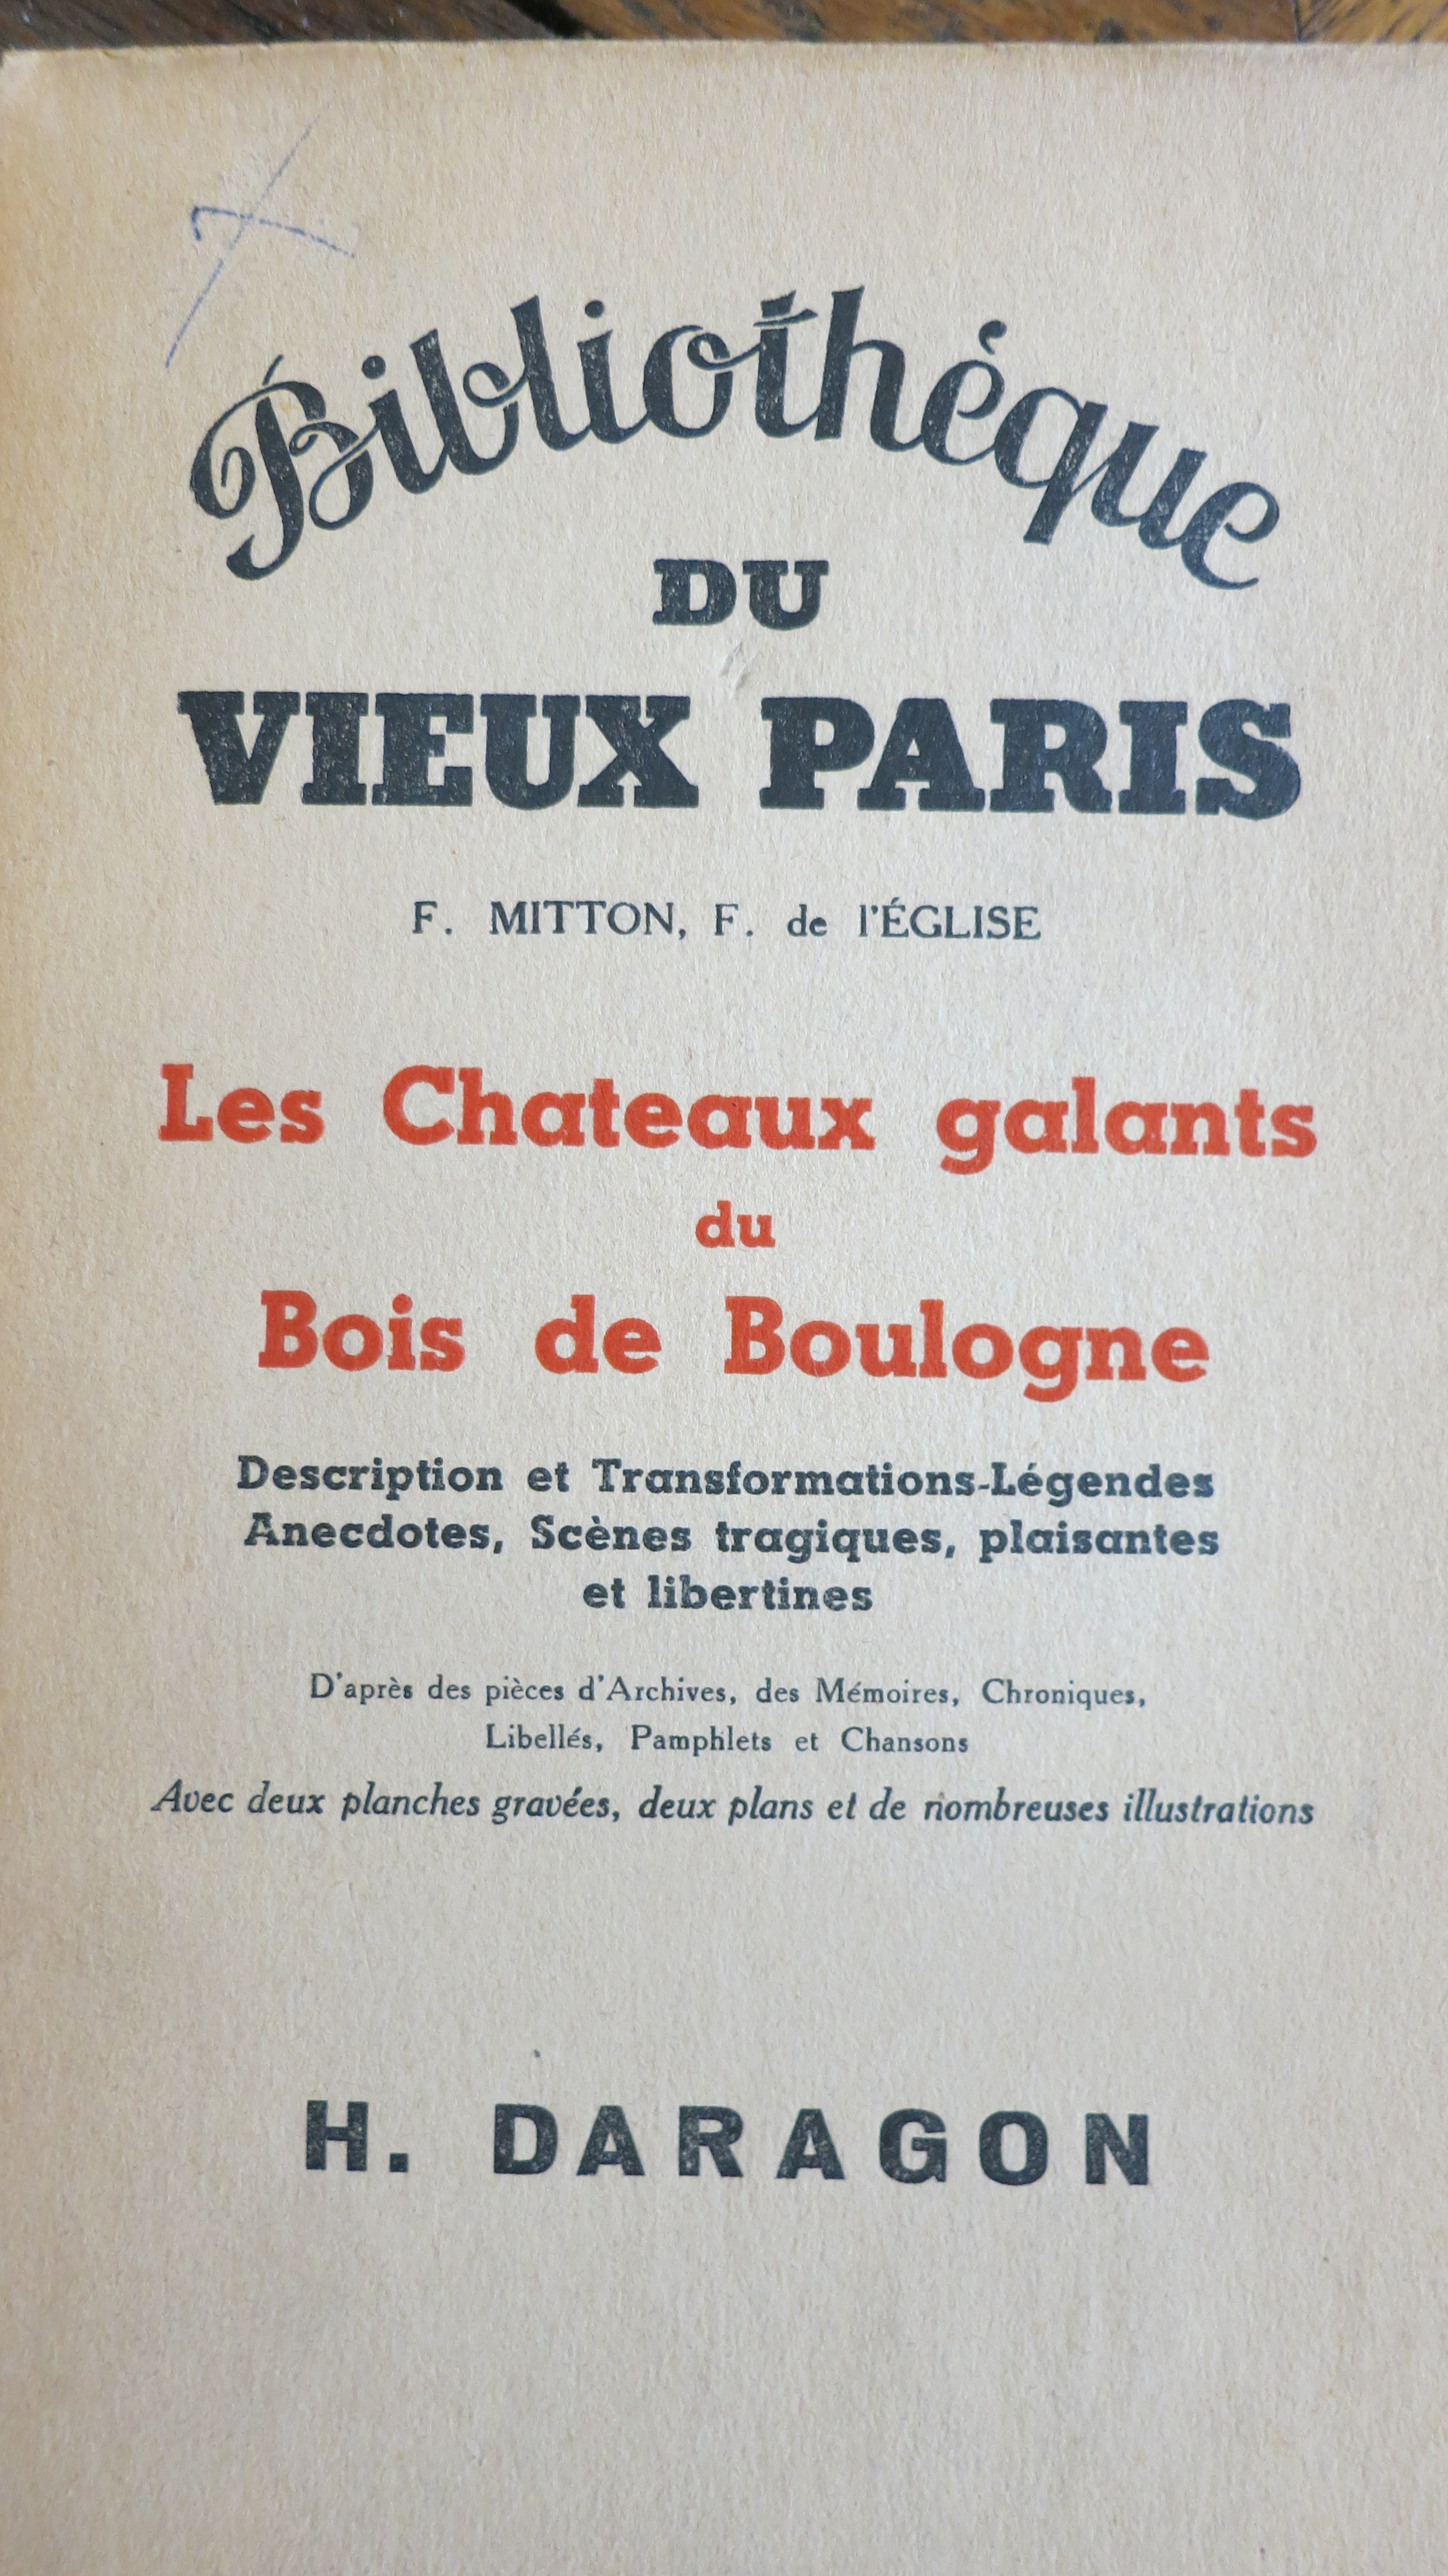 Les Châteaux galants du Bois de Boulogne